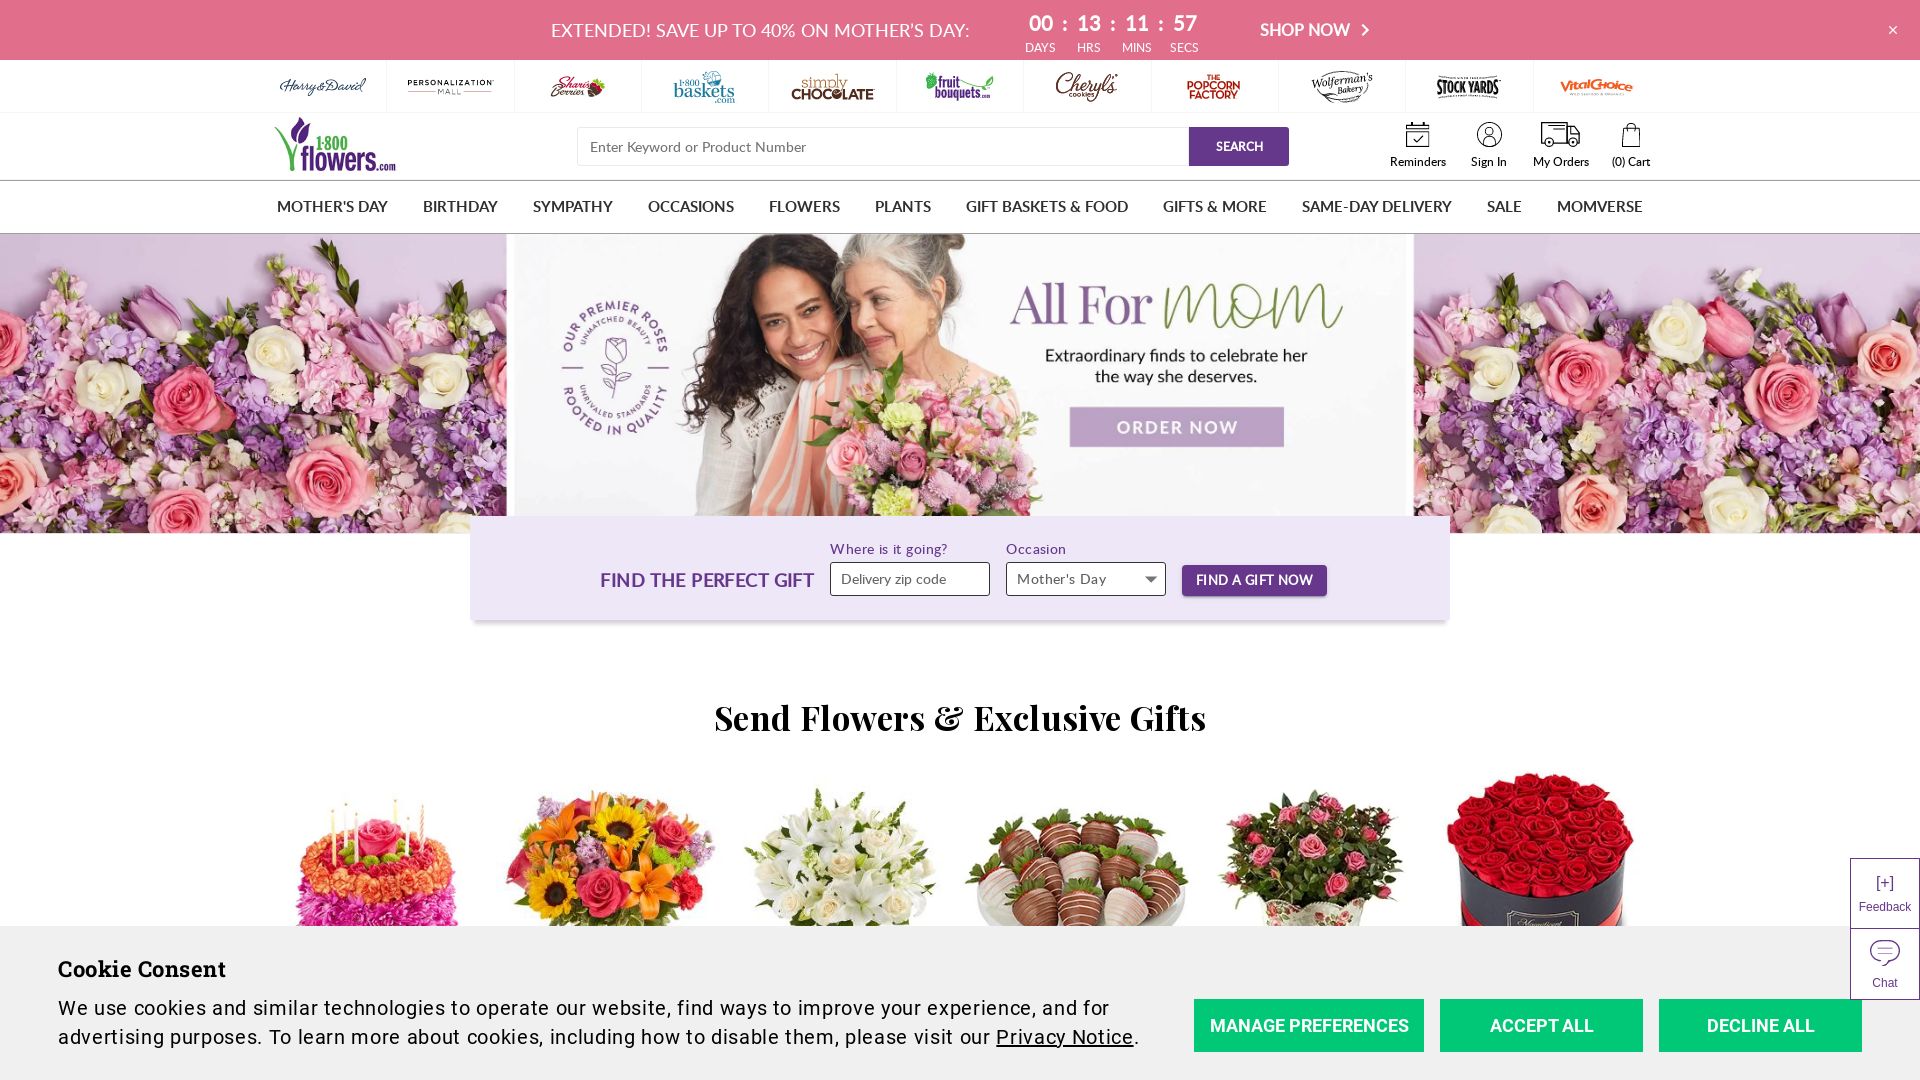 网站状态 1800flowers.com 是  在线的